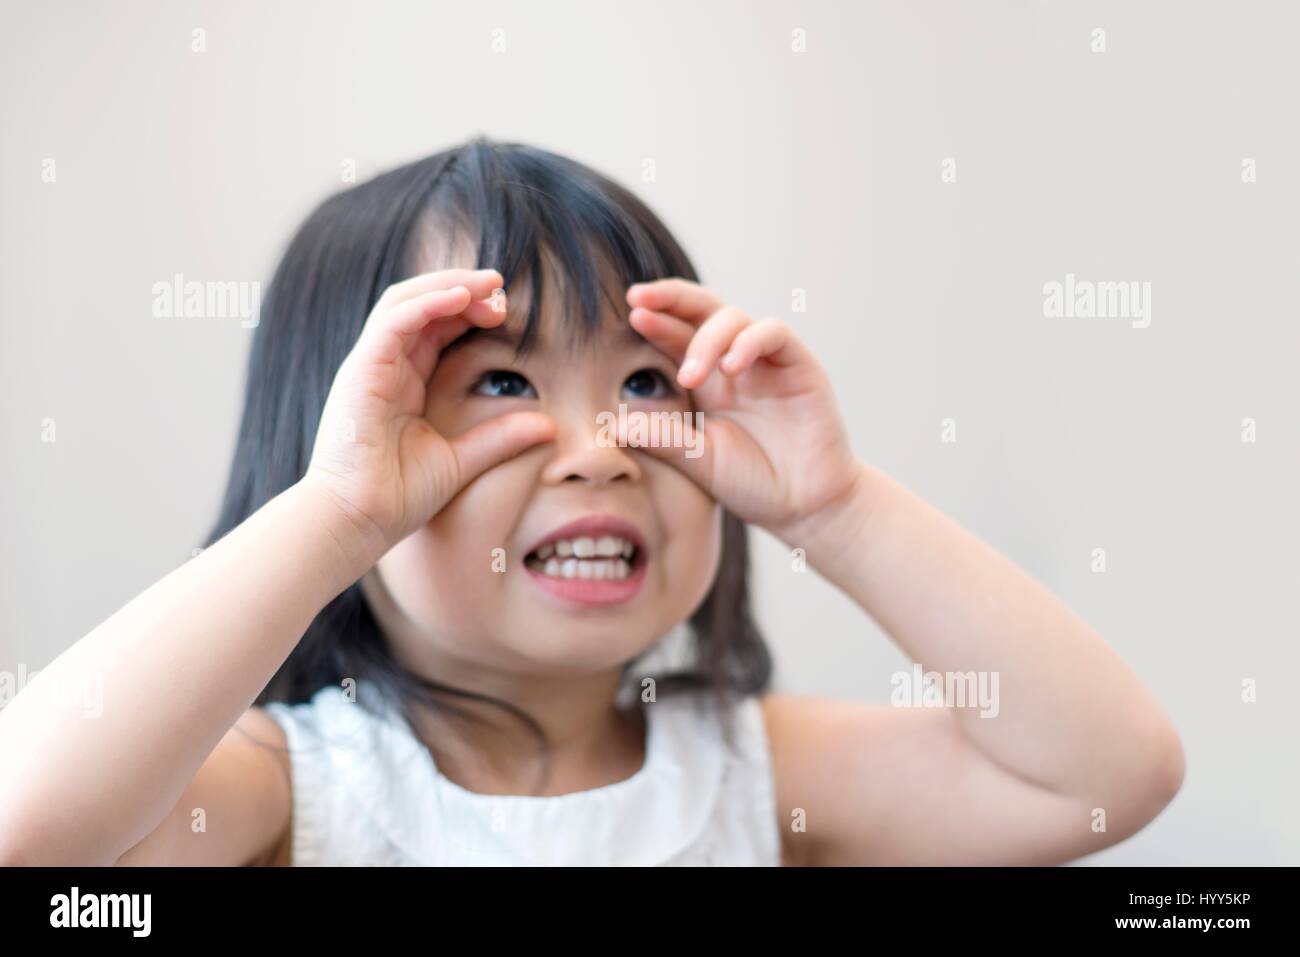 Jeune fille avec des yeux ronds de doigt, studio shot. Banque D'Images